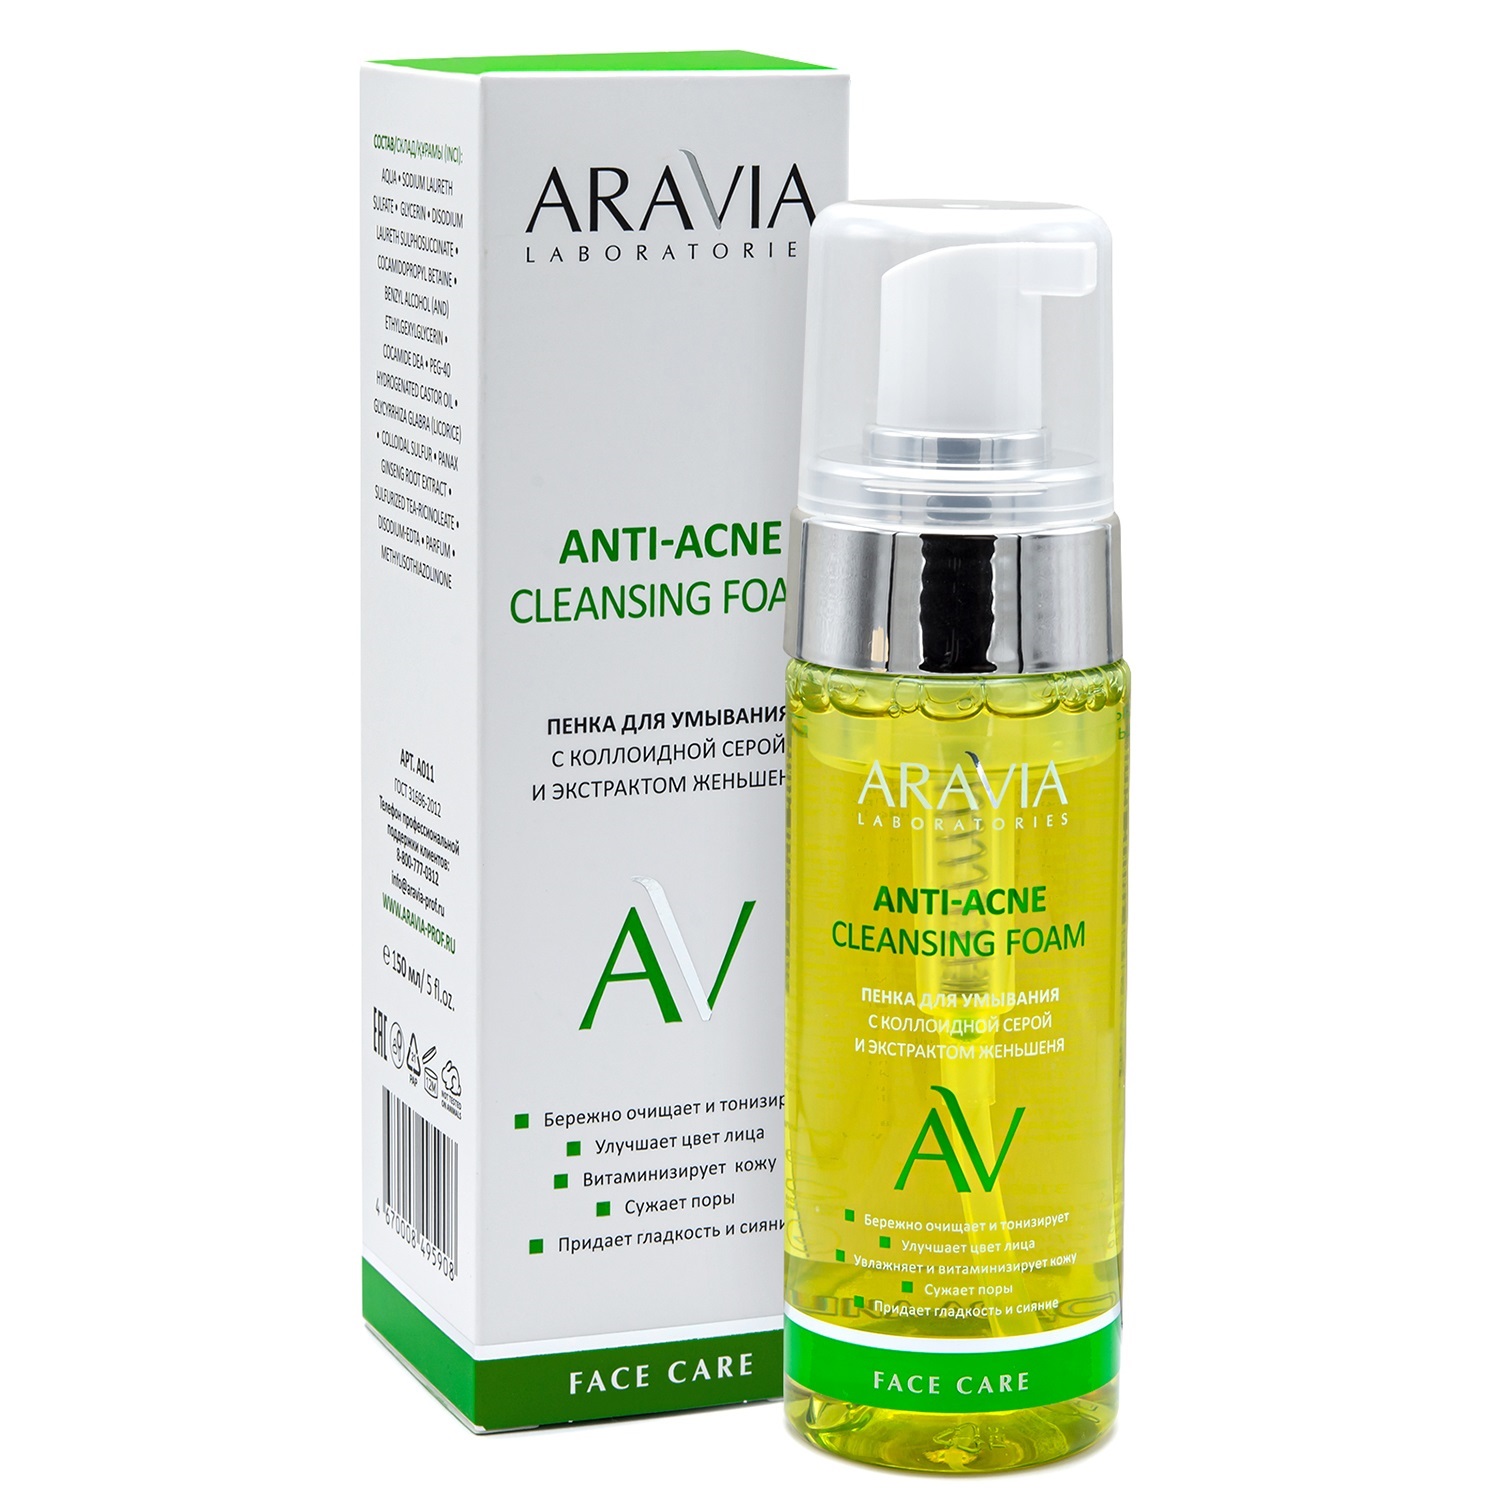 Aravia Laboratories Пенка для умывания с коллоидной серой и экстрактом женьшеня Anti-Acne Cleansing Foam, 150 мл (Aravia Laboratories, Уход за лицом)